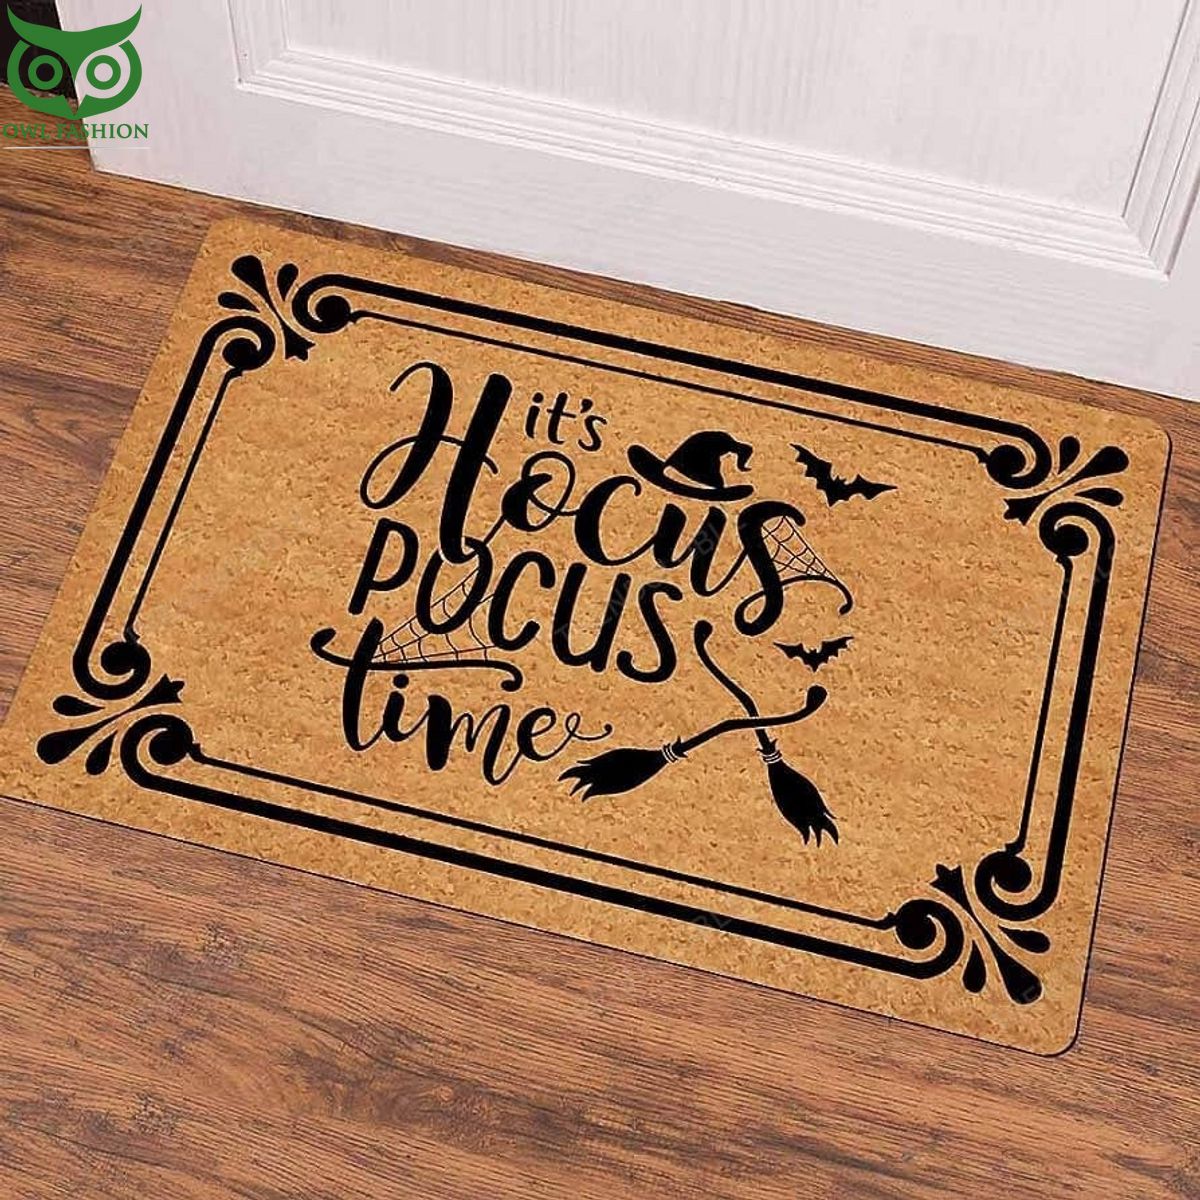 Hocus Pocus Brown Doormat Best picture ever